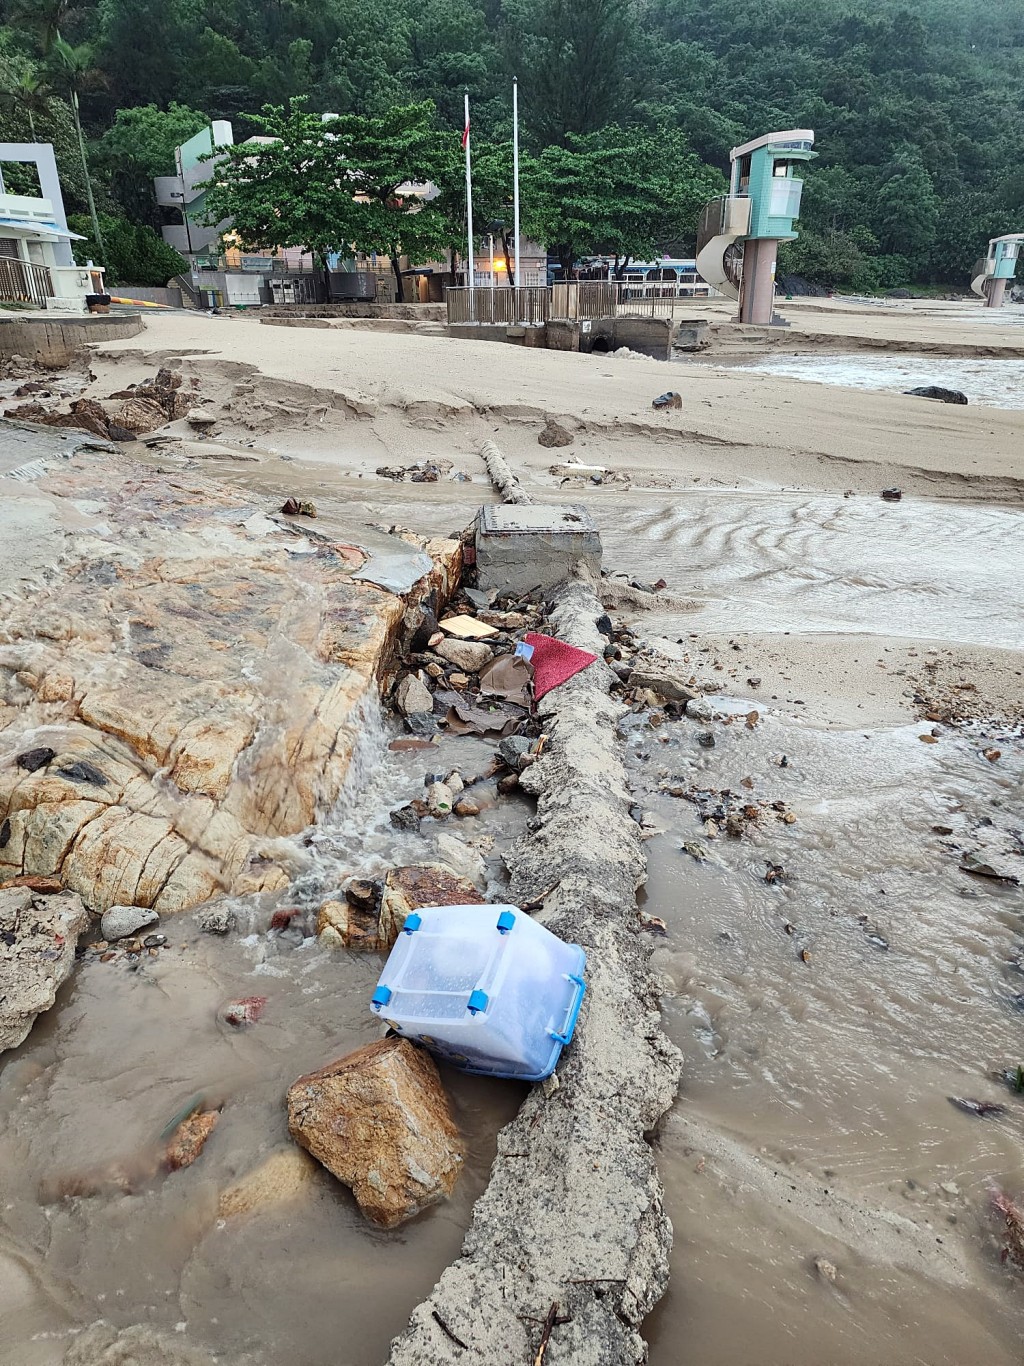 桥咀洲厦门湾部分滩面疑被暴雨冲塌。读者提供